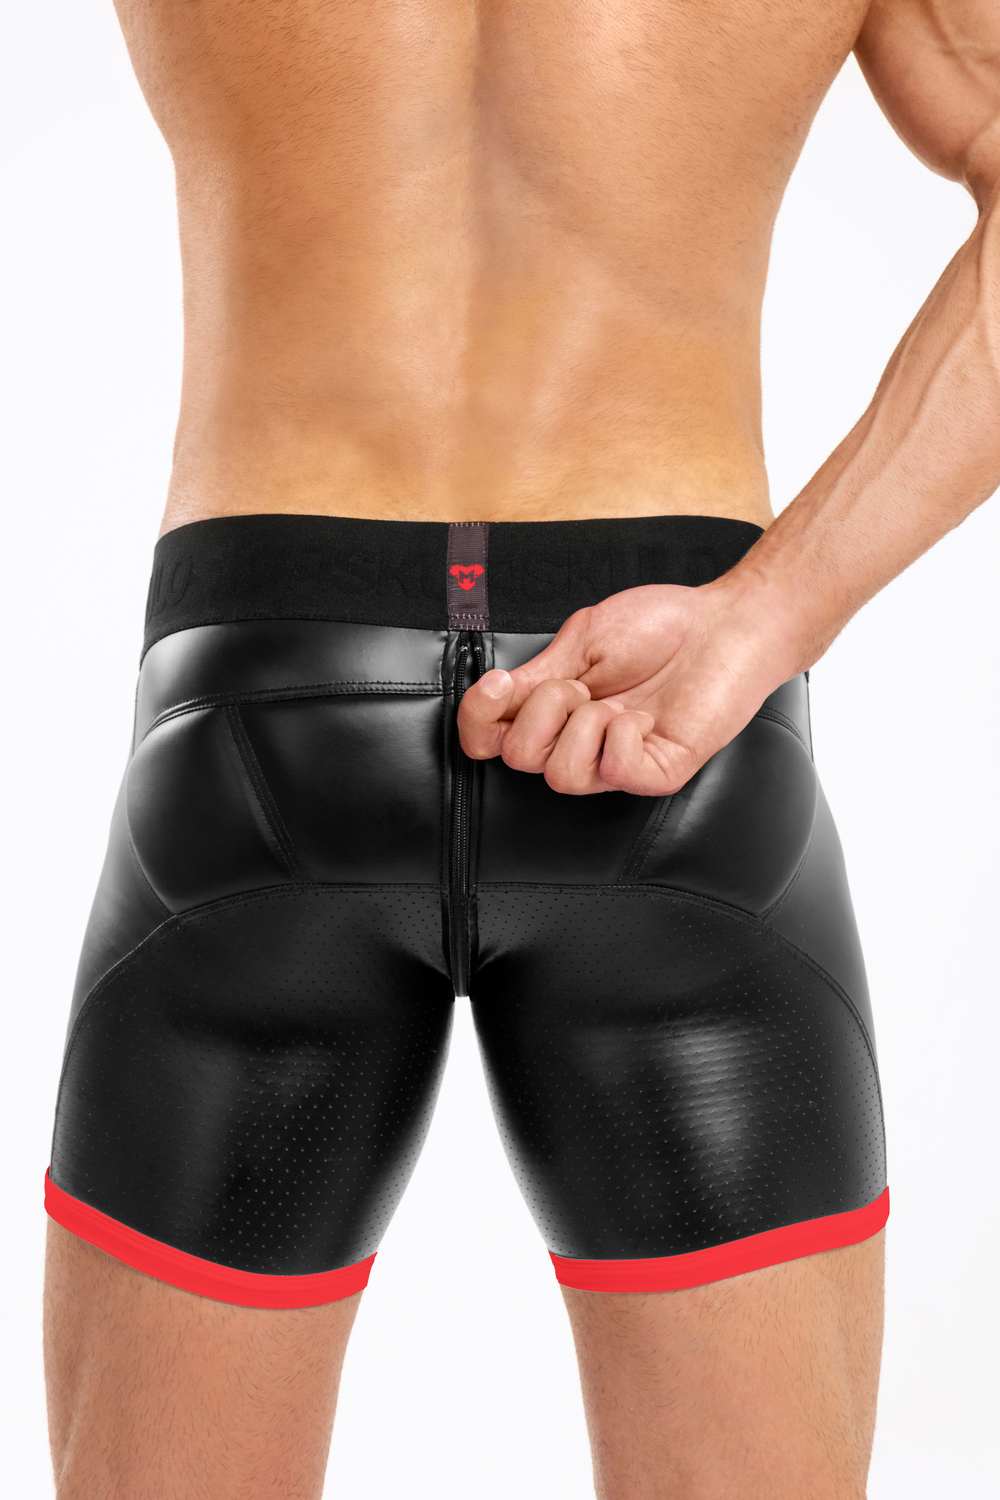 Pantalón Corto Básico con Almohadillas. Parte trasera con cremallera. Negro+Rojo